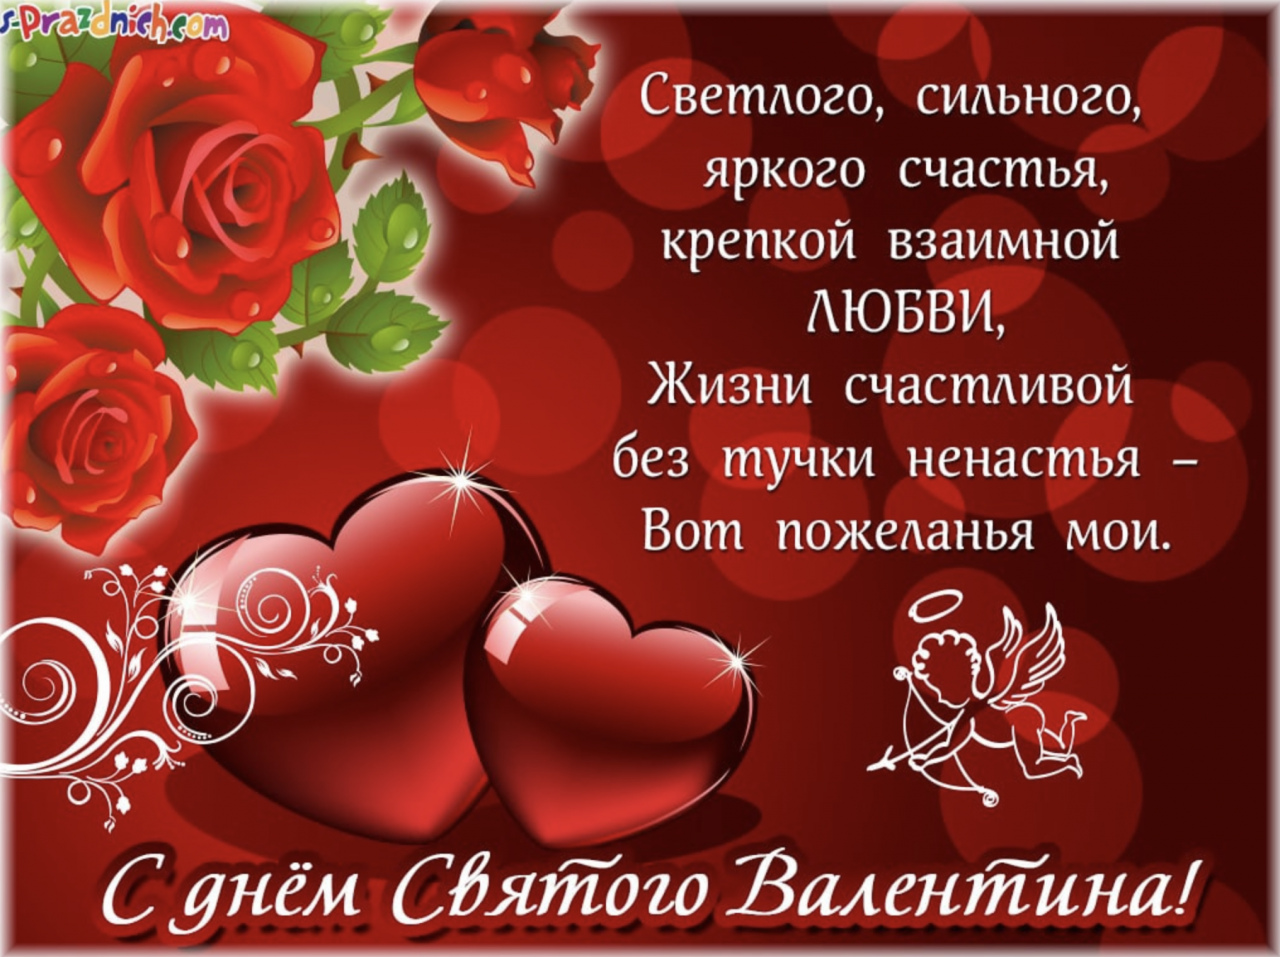 открытка к Дню святого Валентина с красными розами, сердцами и поздравительным текстом на русском языке